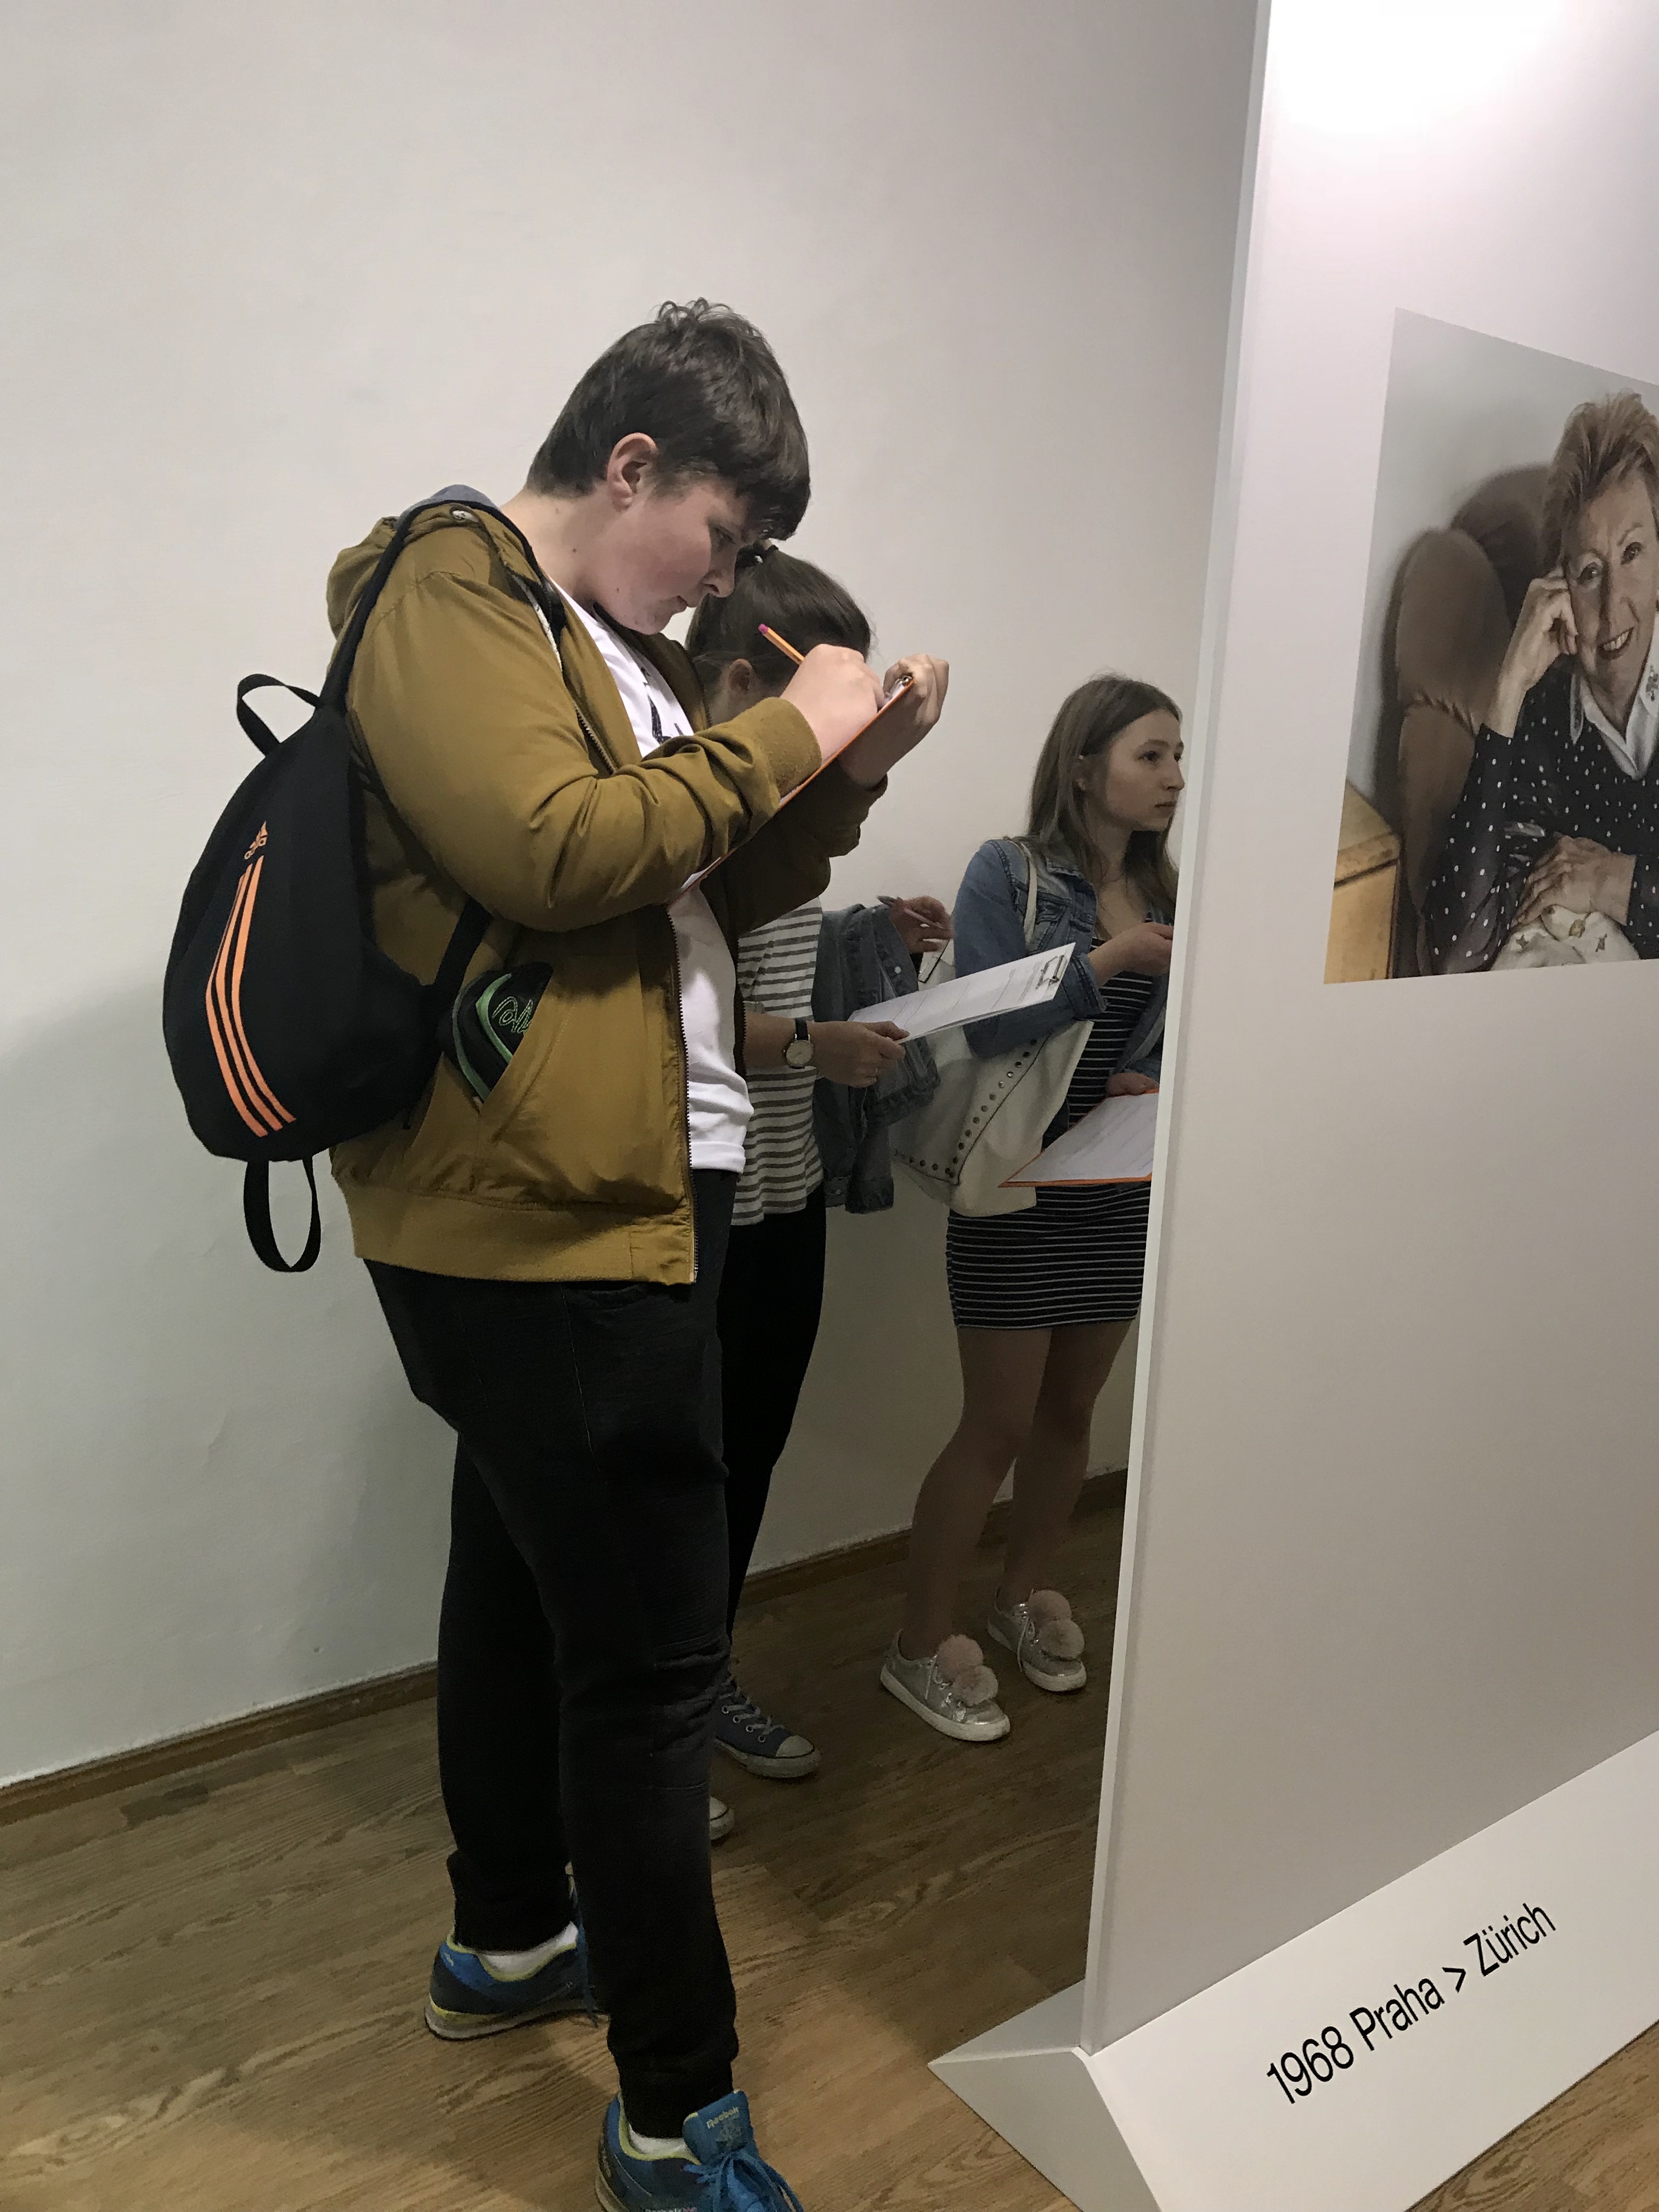 Dne 12.04. 2018 navštívilo výstavu 58 studentů Anglicko-českého gymnázia Amazon. Společně se spolupracovníky velvyslanectví se aktivně zúčastnili programu, který byl pro ně speciálně připraven na téma domov a vlast.